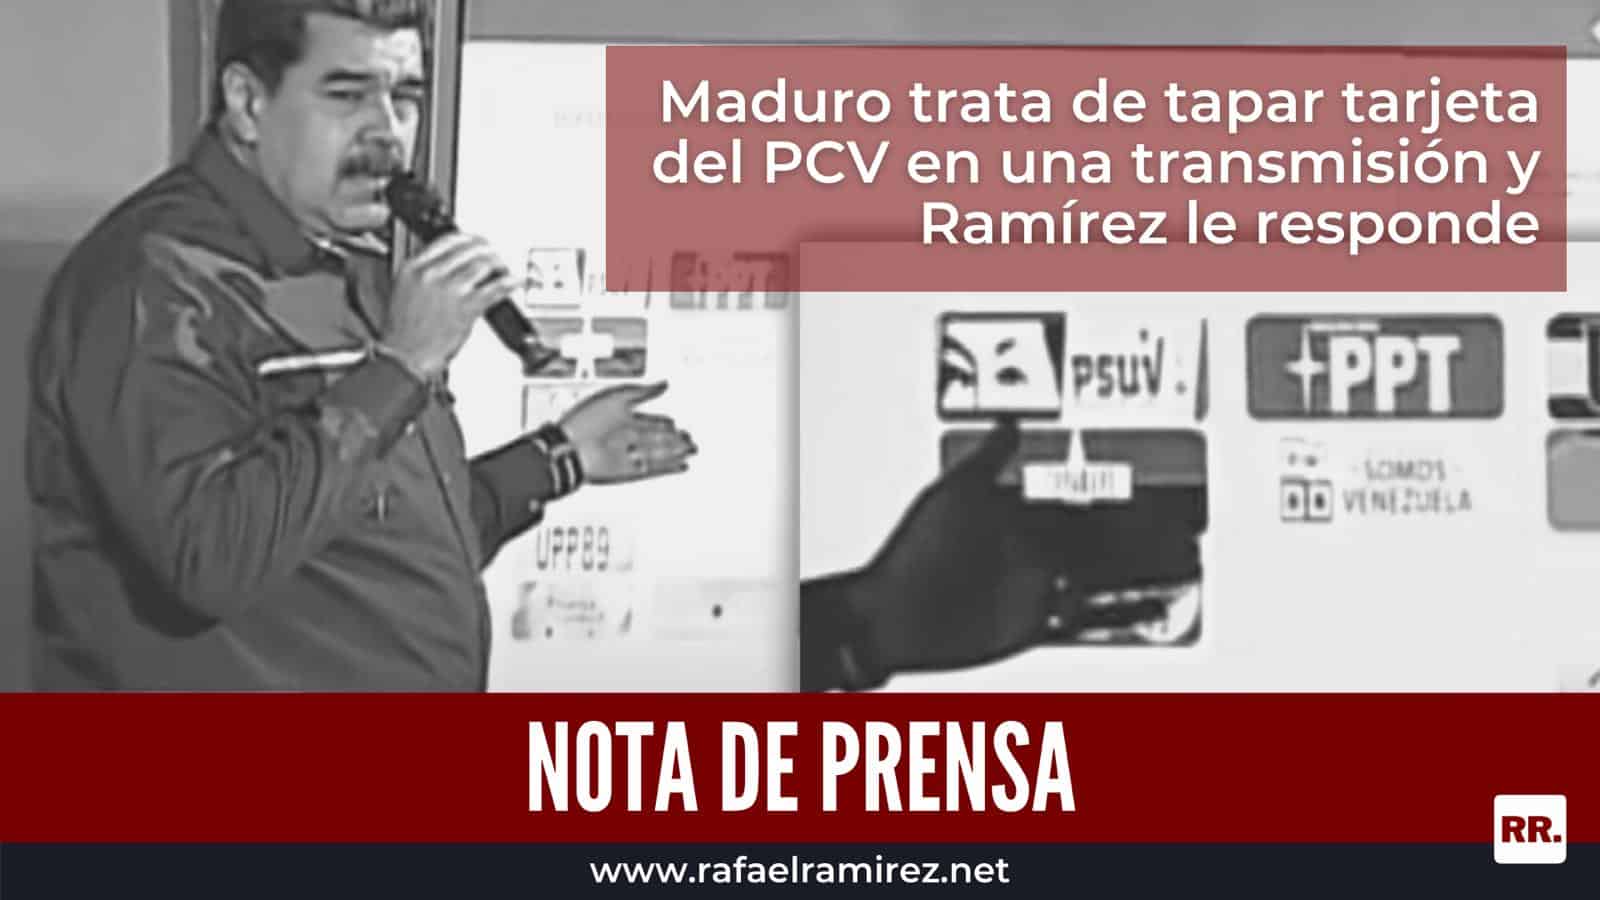 Maduro trata de tapar tarjeta del PCV en una transmisión y Ramírez le responde